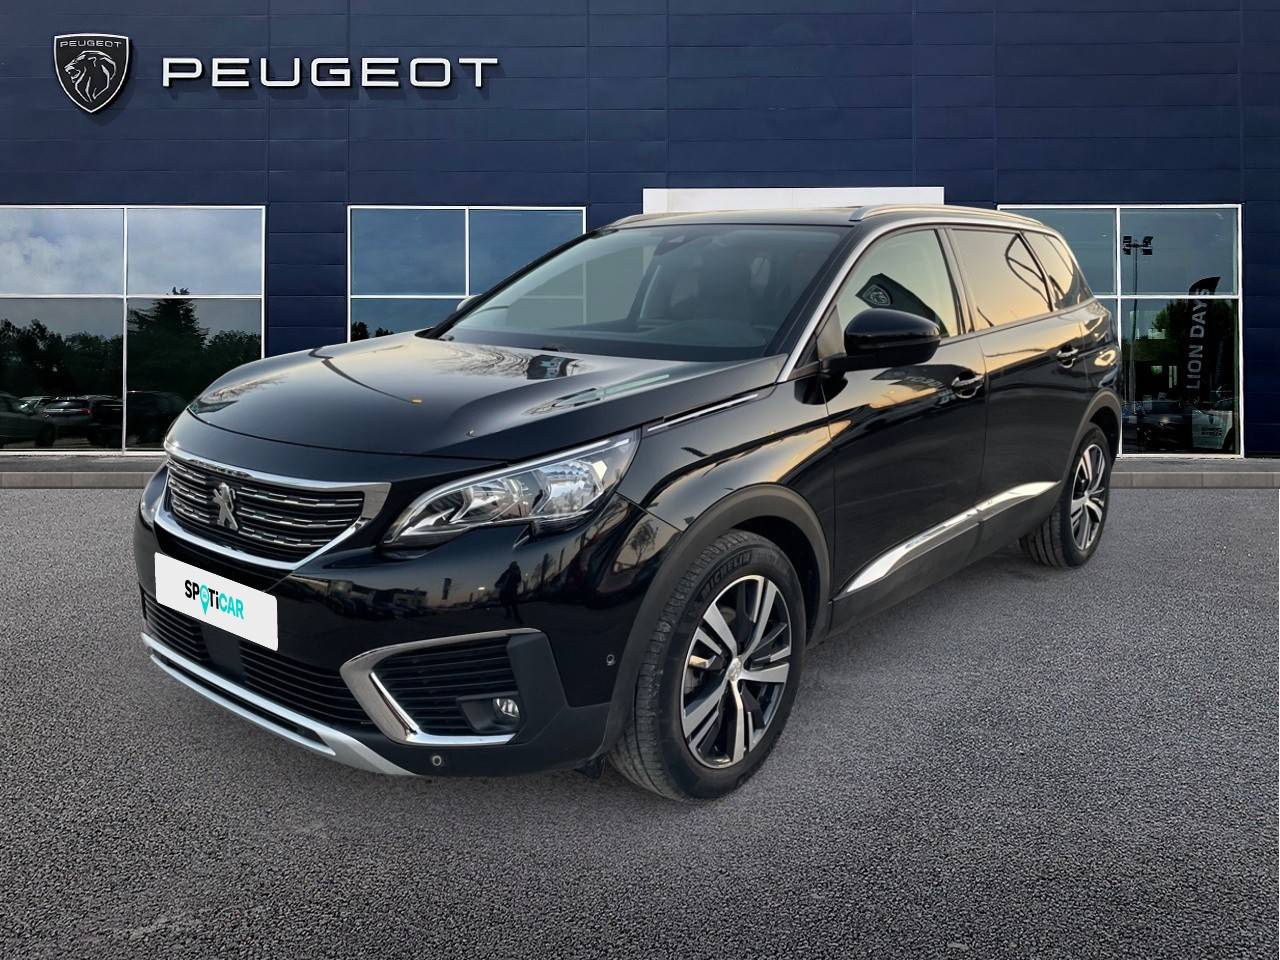 PEUGEOT 5008 | 5008 PureTech 130ch S&S EAT8 occasion - Peugeot Cavaillon